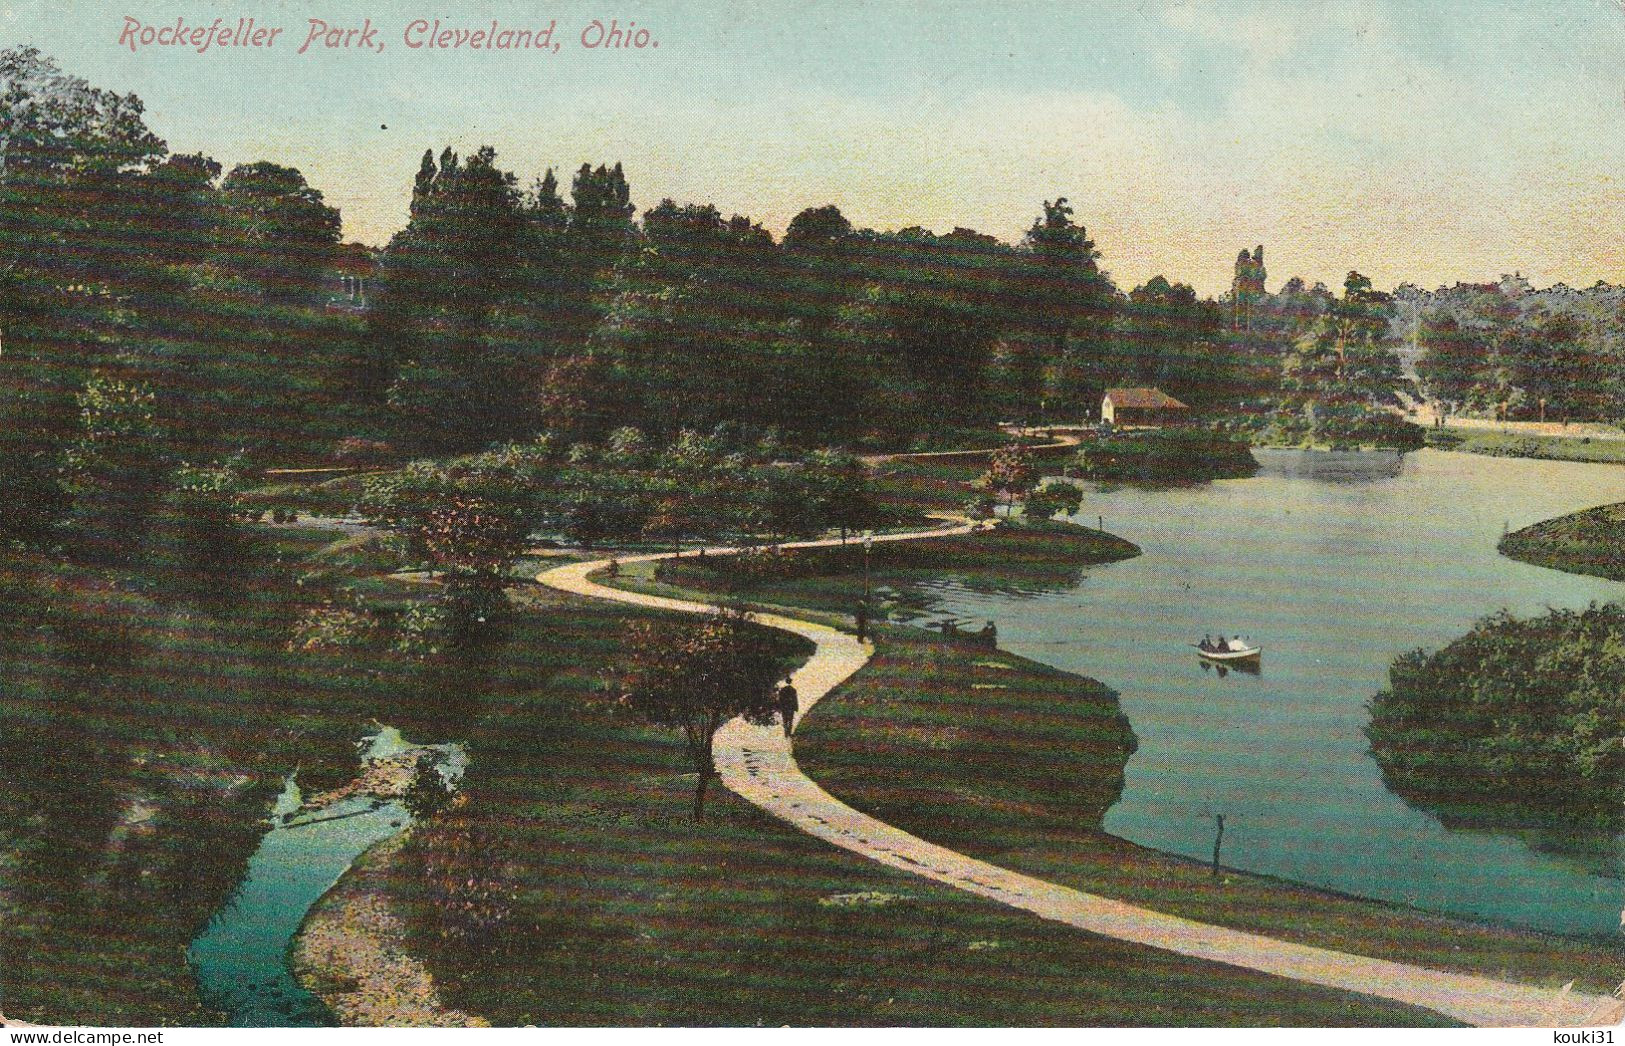 Cleveland : Rockfeller Park - Cleveland